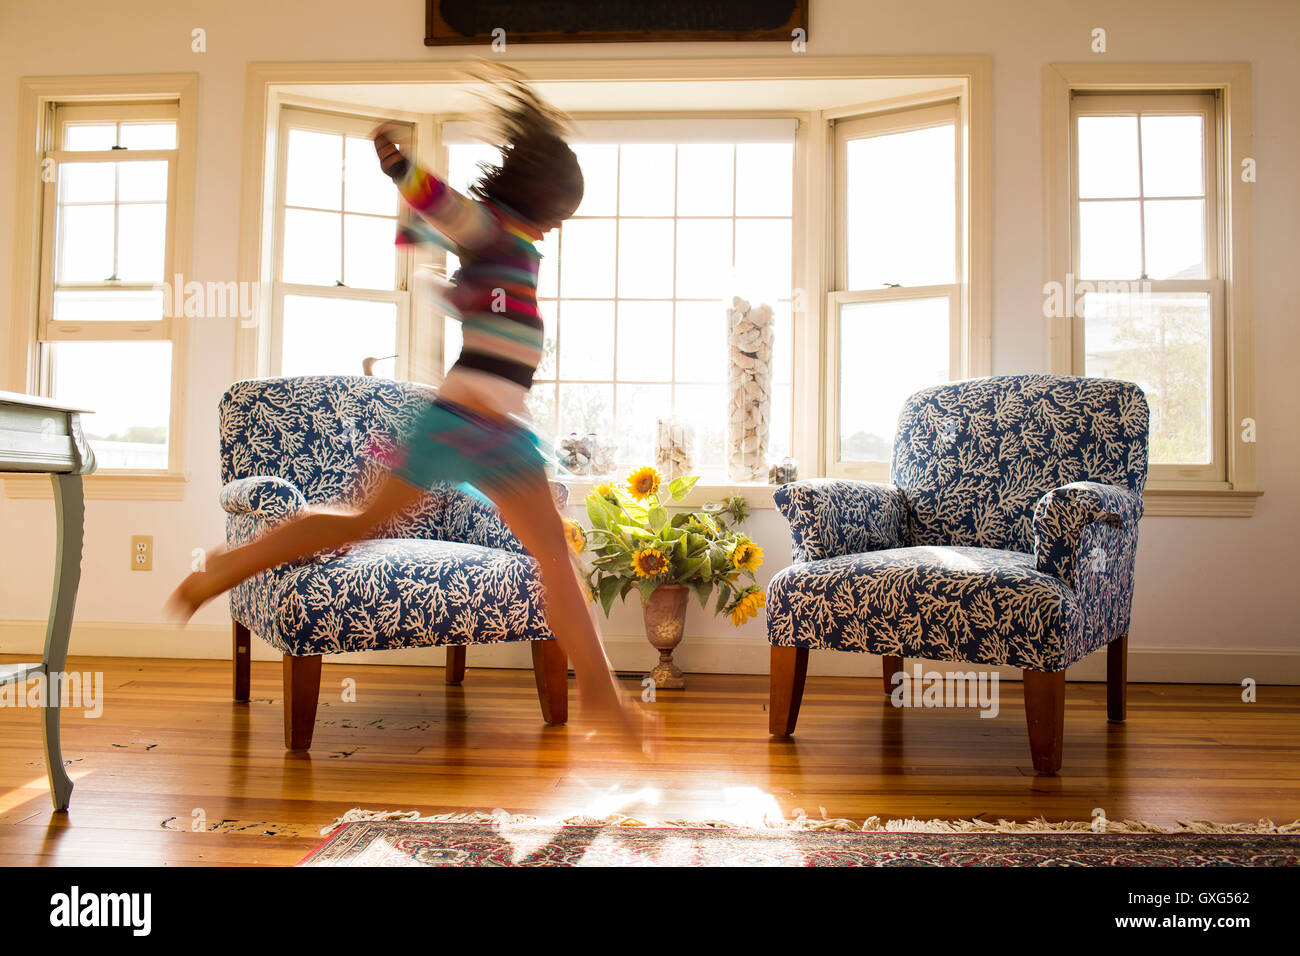 Spensierata ragazza caucasica correre e saltare nel livingroom Foto Stock